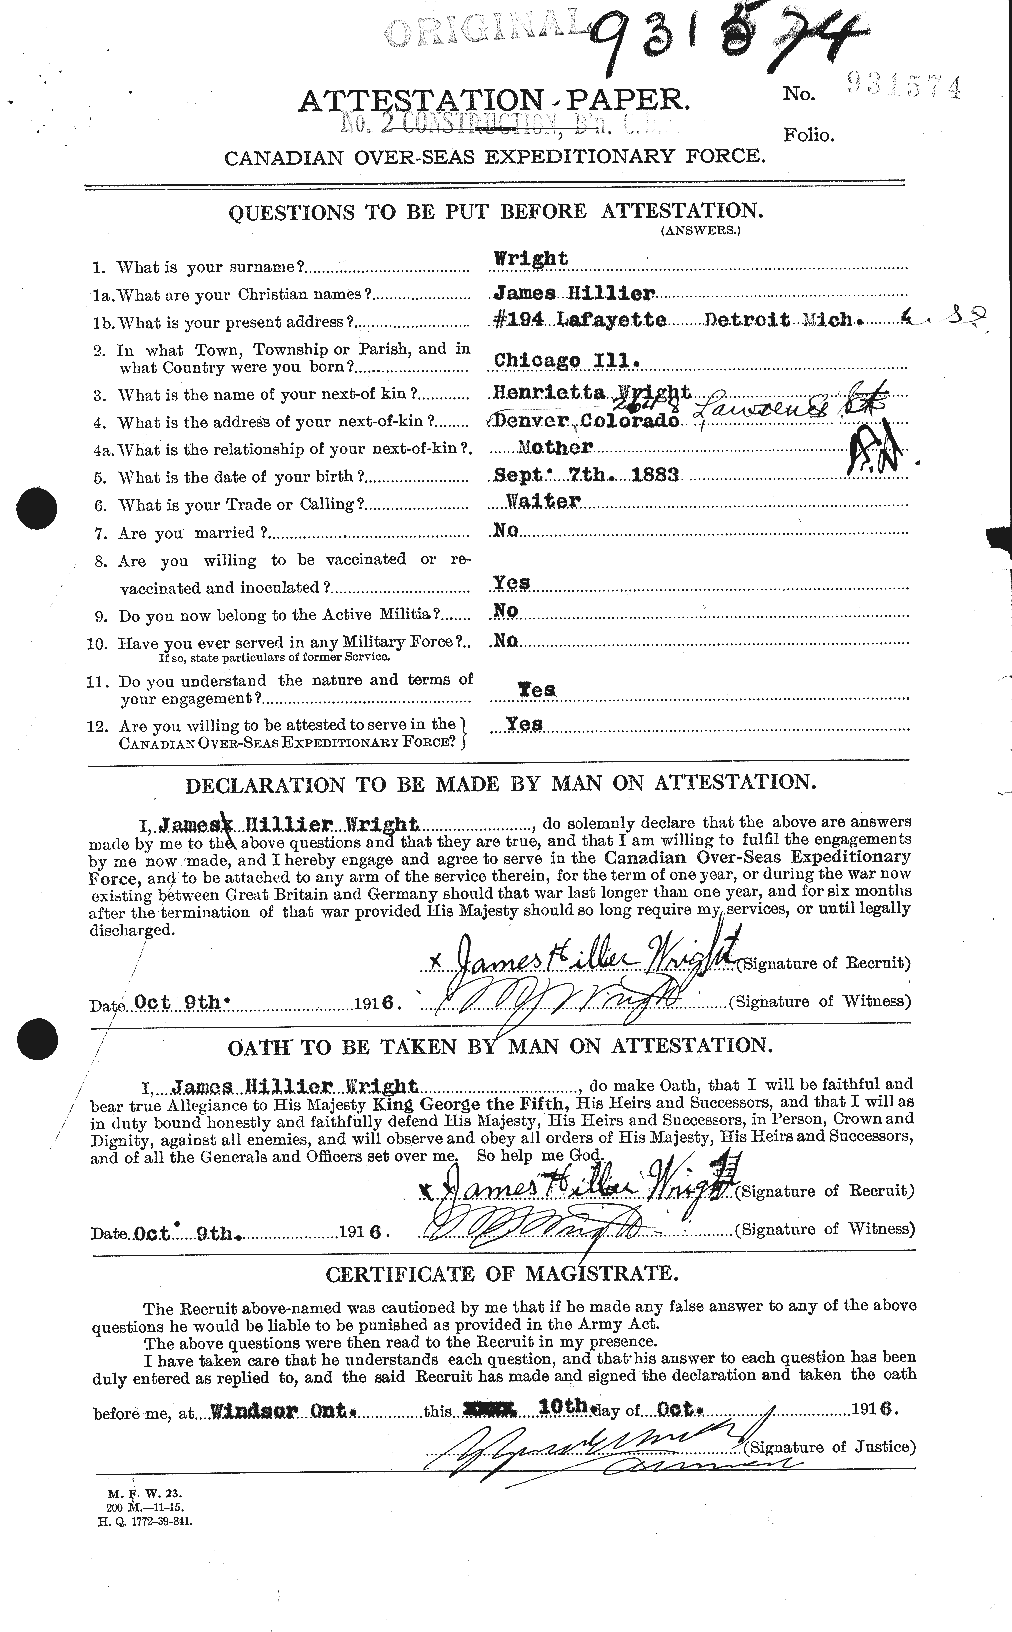 Dossiers du Personnel de la Première Guerre mondiale - CEC 687026a